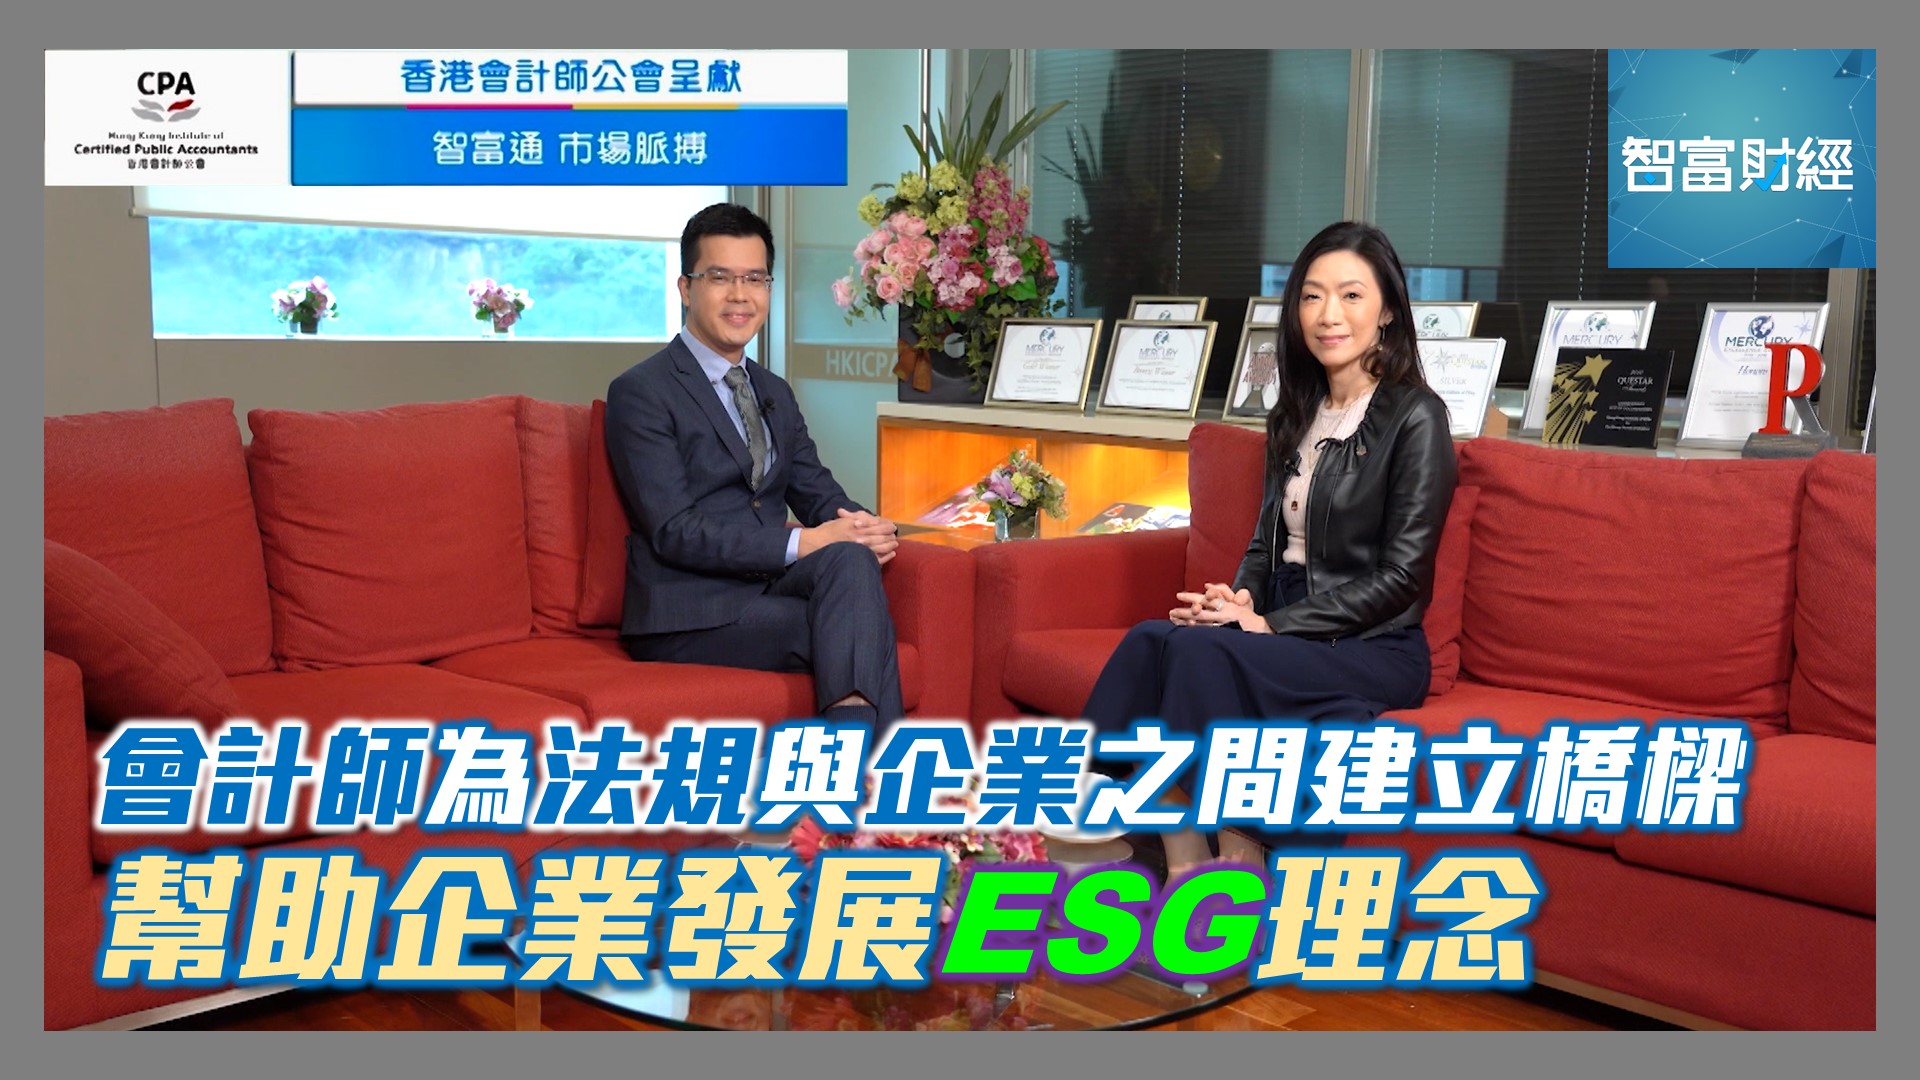 《》 節目重溫: 【香港會計師公會 呈獻《智富通 市場脈搏》】 會計師為法規與企業之間建立橋樑 幫助企業發展ESG理念